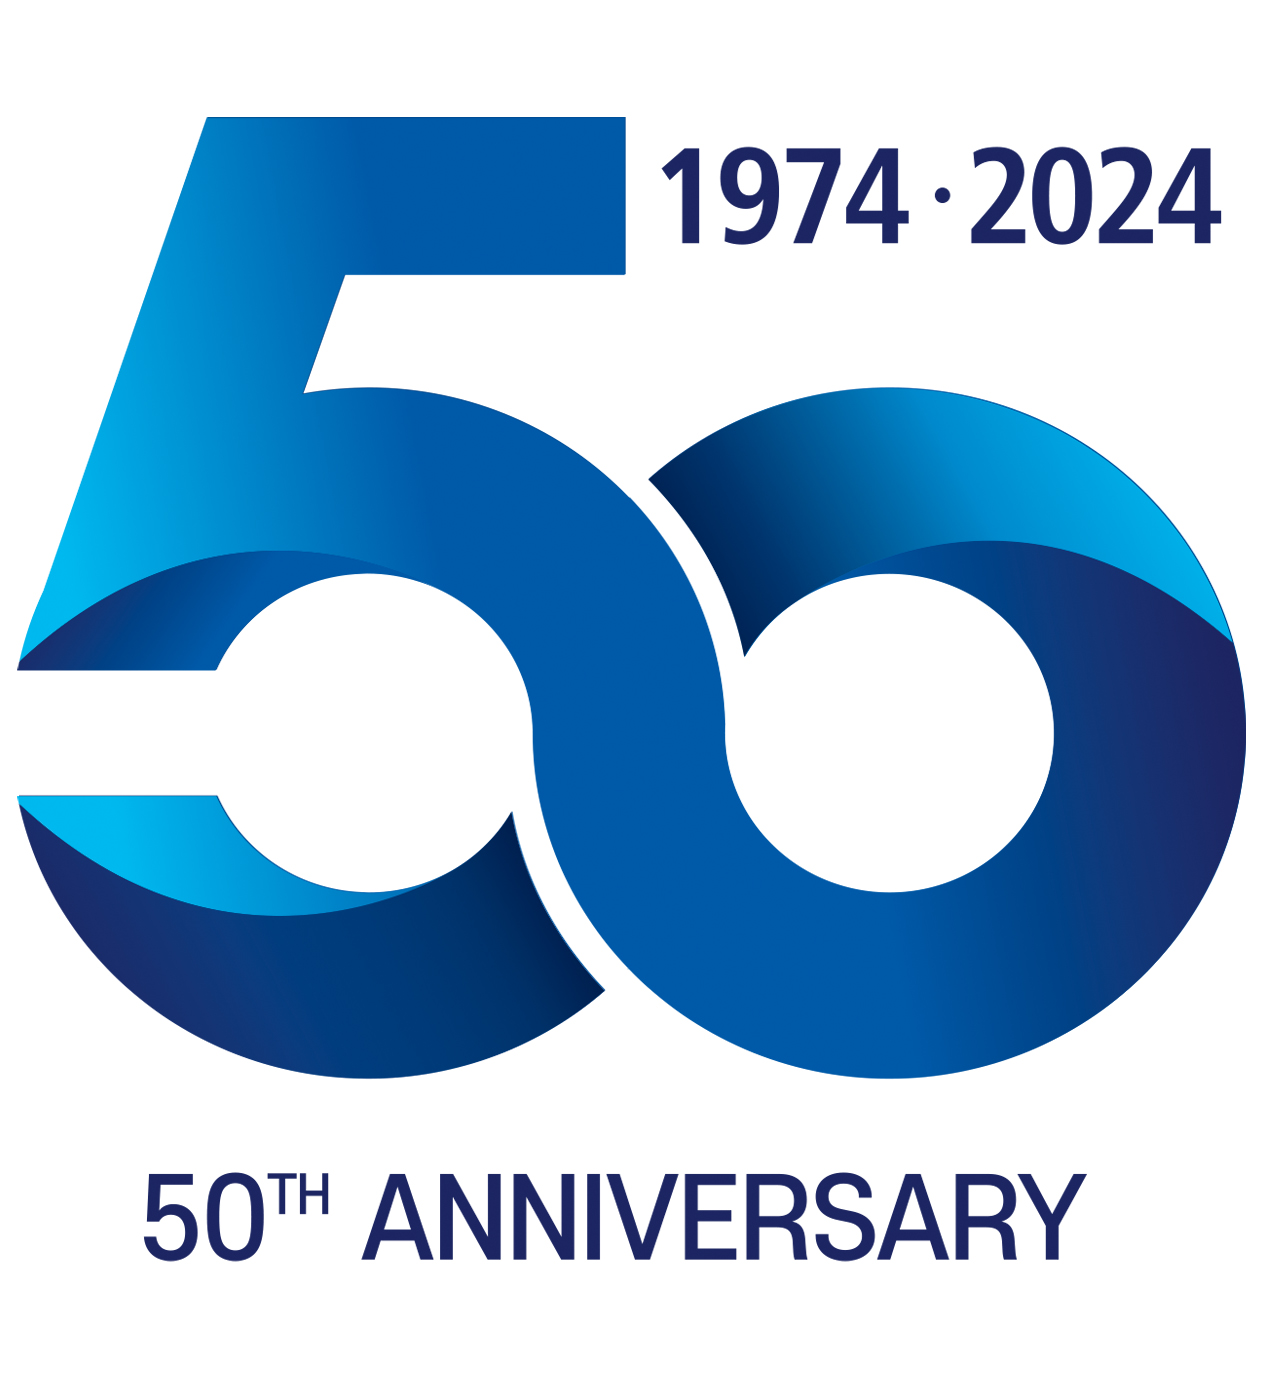 이날 공개된 창립 50주년 기념 엠블럼은 '무한대'의 상징과 '지속성장 가능성'을 형상화해 회사의 새로운 출발과 미래에 대한 무한한 가능성을 표현했다. 출처=삼성중공업